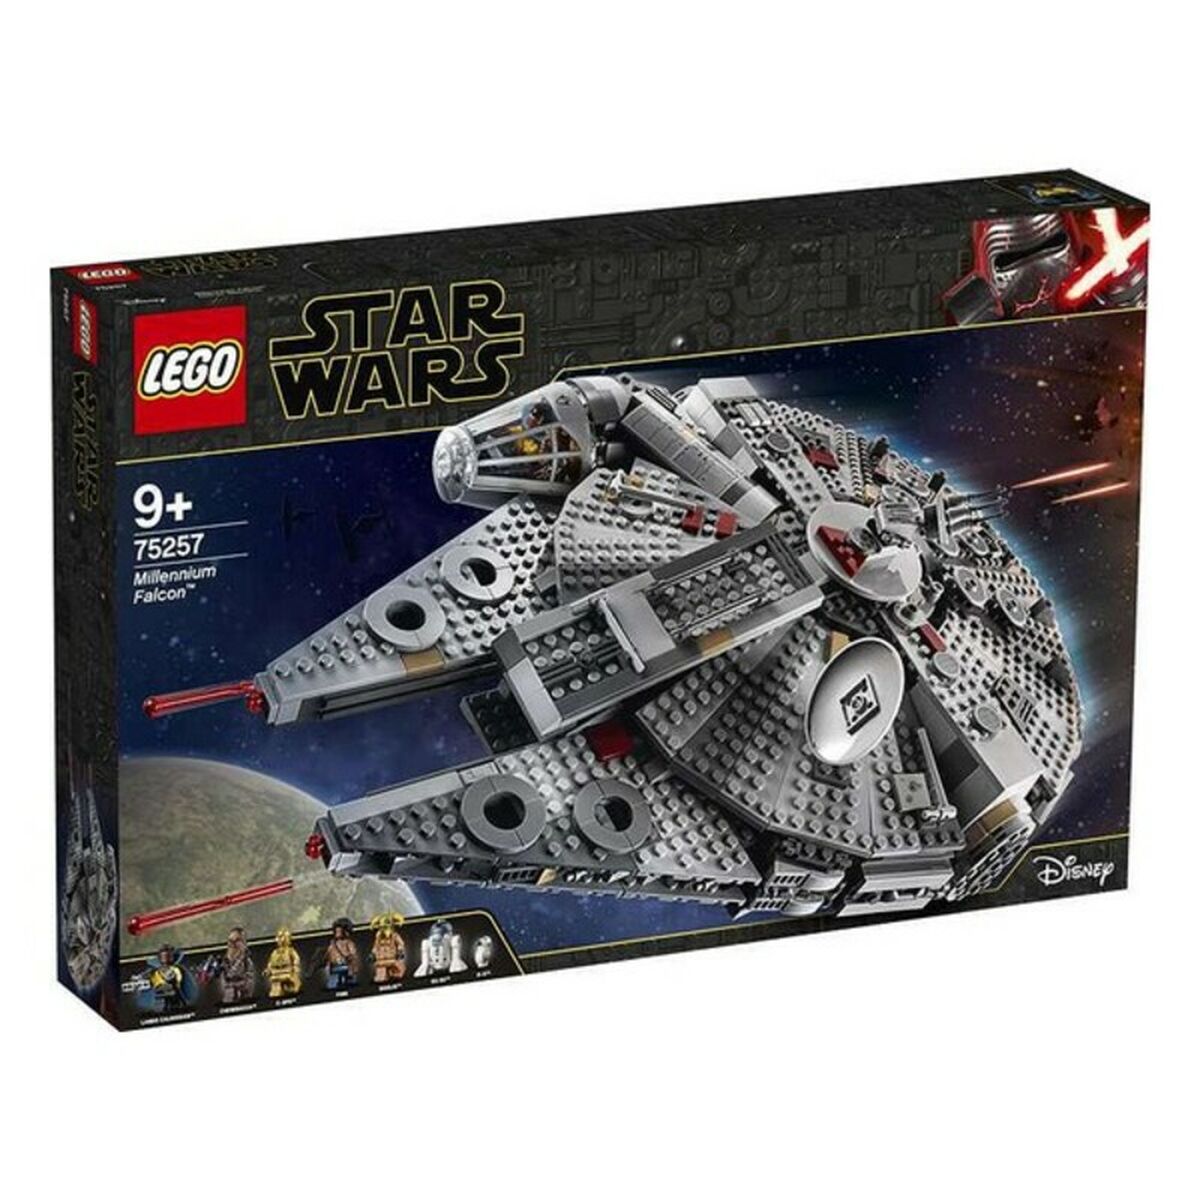 Set de construction   Lego Star Wars ™ 75257 Millennium Falcon ™         Multicouleur 1351 Pièces  